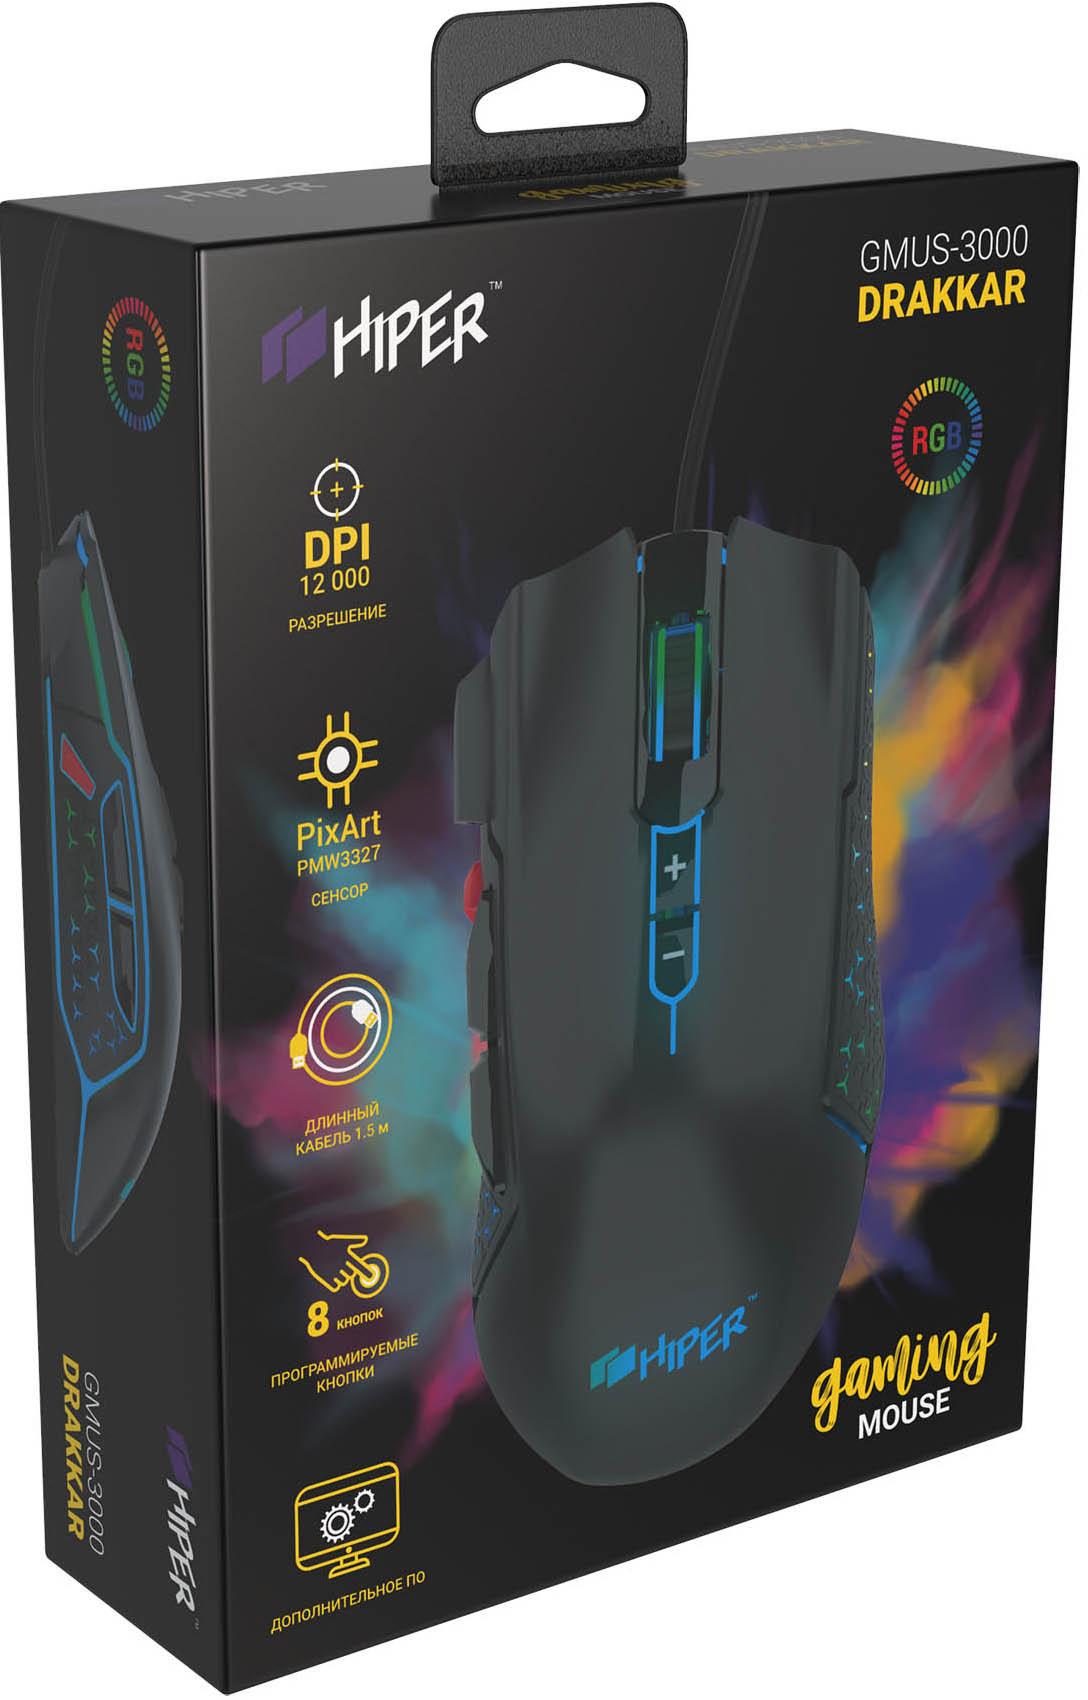 Мышь HIPER GMUS-3000 DRAKKAR проводная игровая для PC (чёрный)(7930092030049) от 1С Интерес